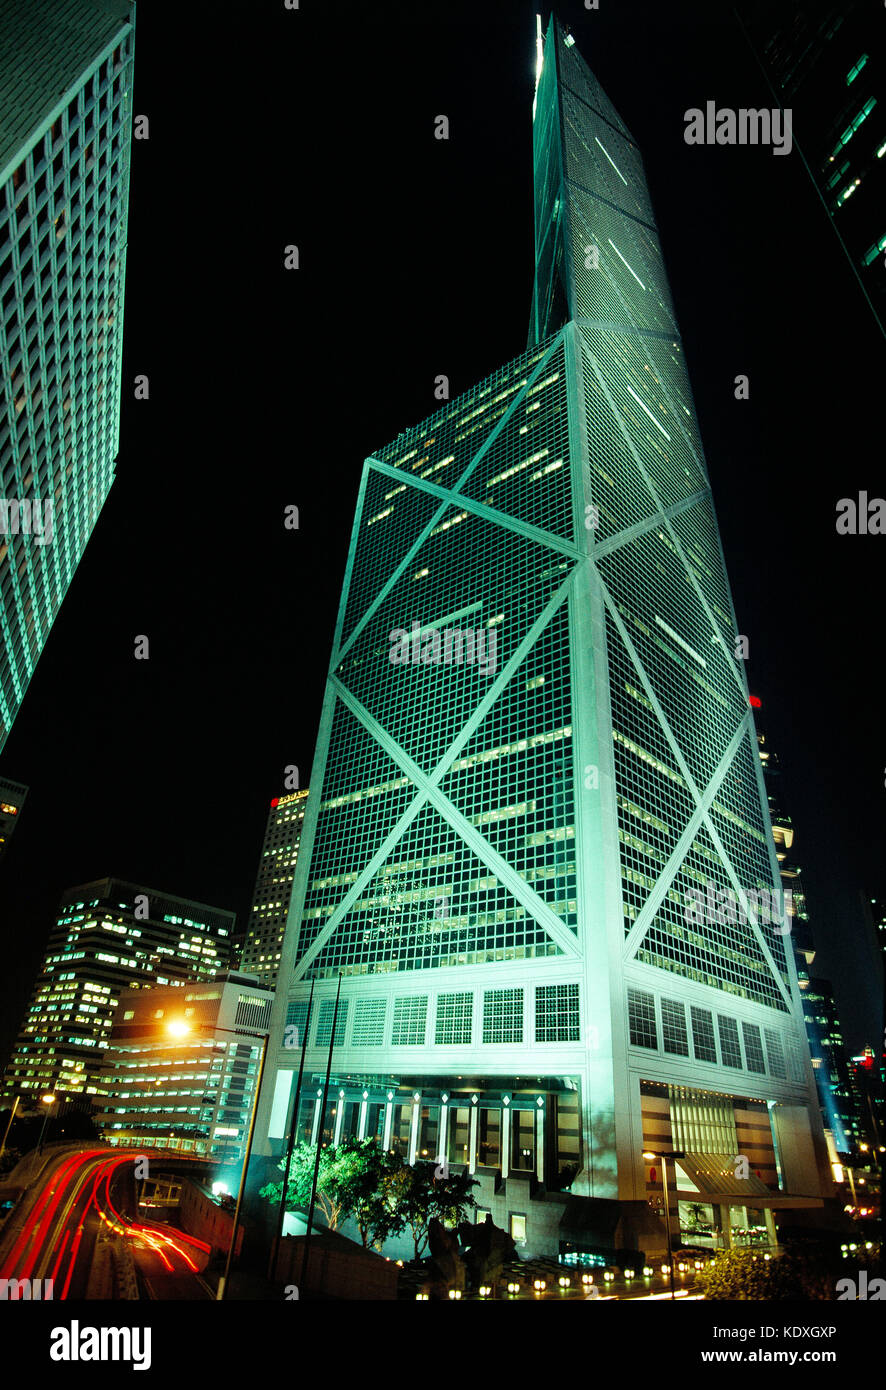 China. Hong Kong. Bank of China building at night. Stock Photo